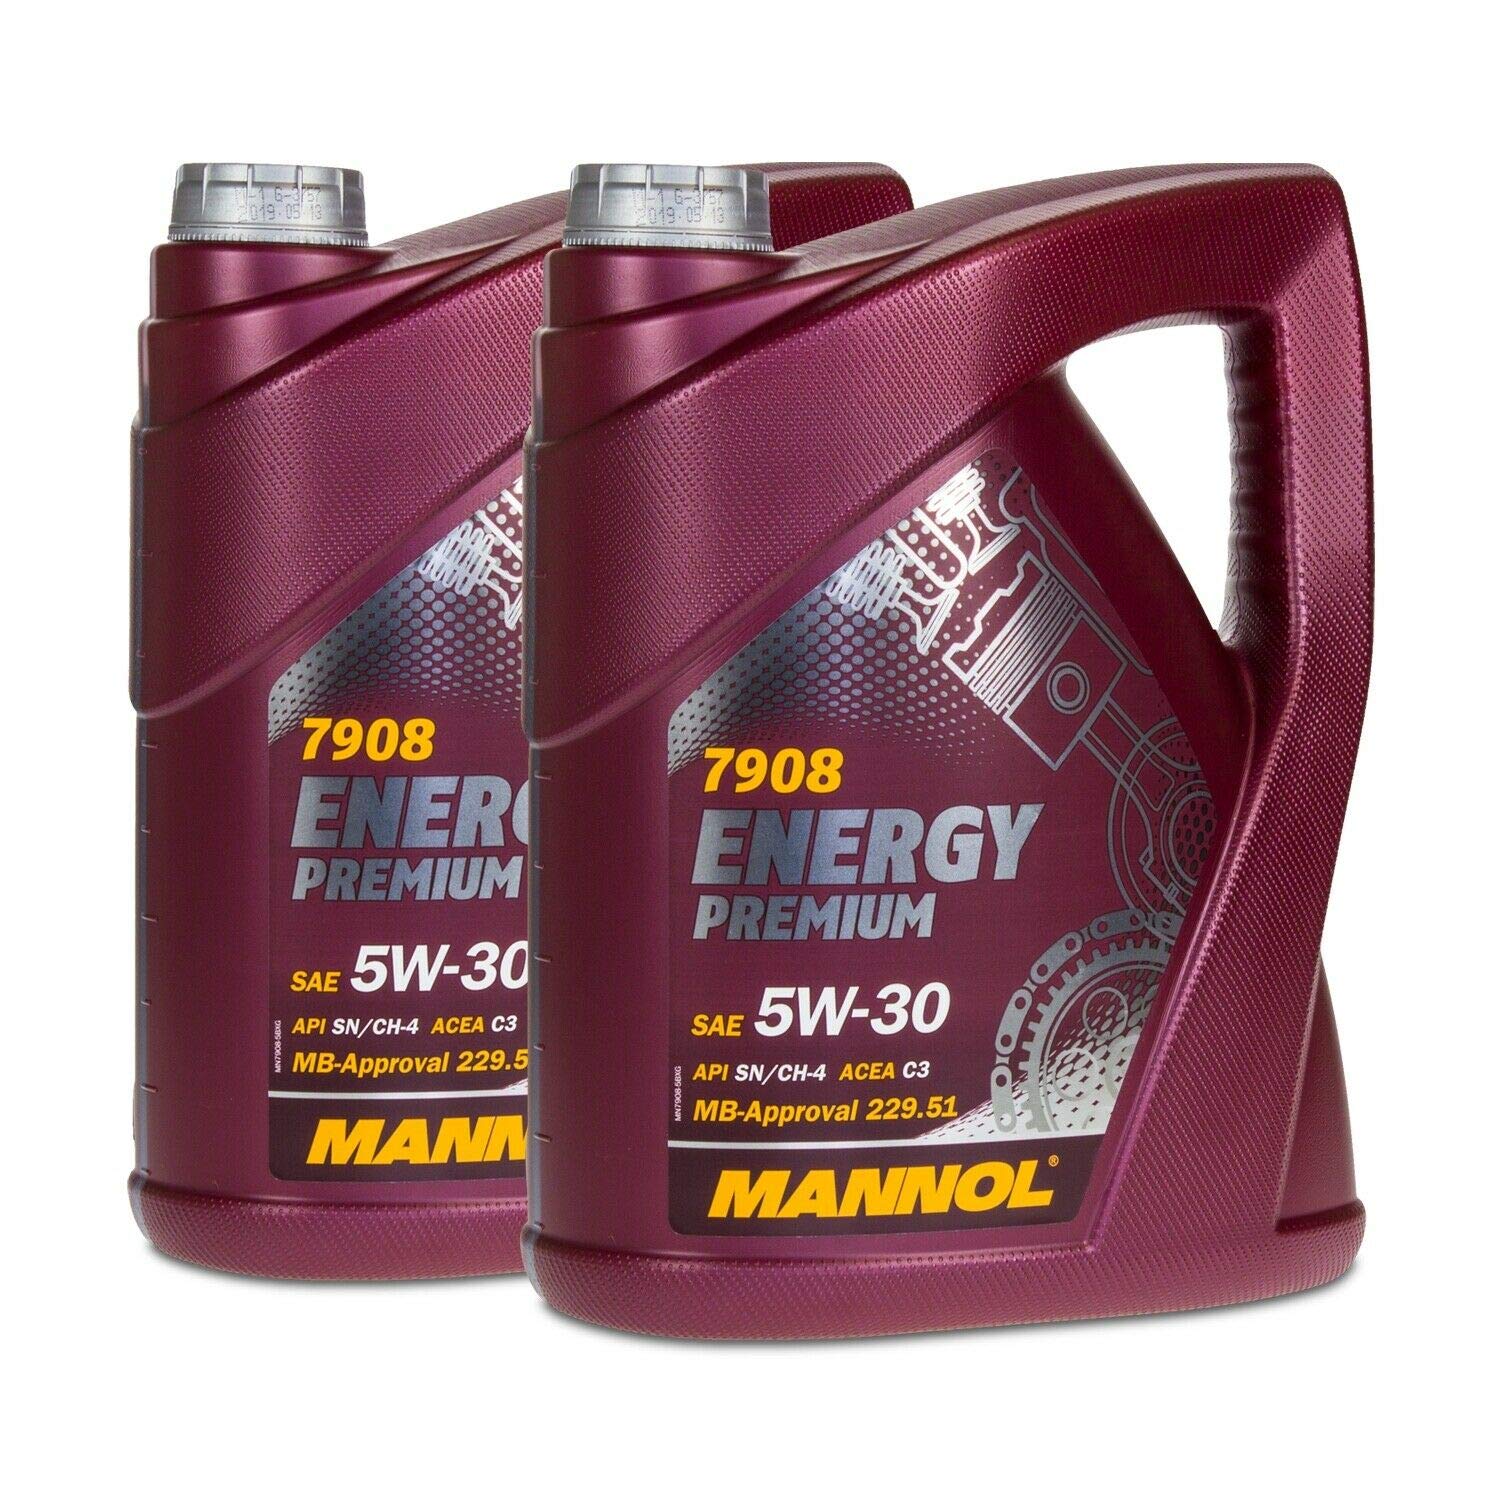 MANNOL 2 x 5 (10 Liter) Energy Premium 5W-30 FREIGABE 229.51 505.01 C3 DPF MOTORÖL von MANNOL